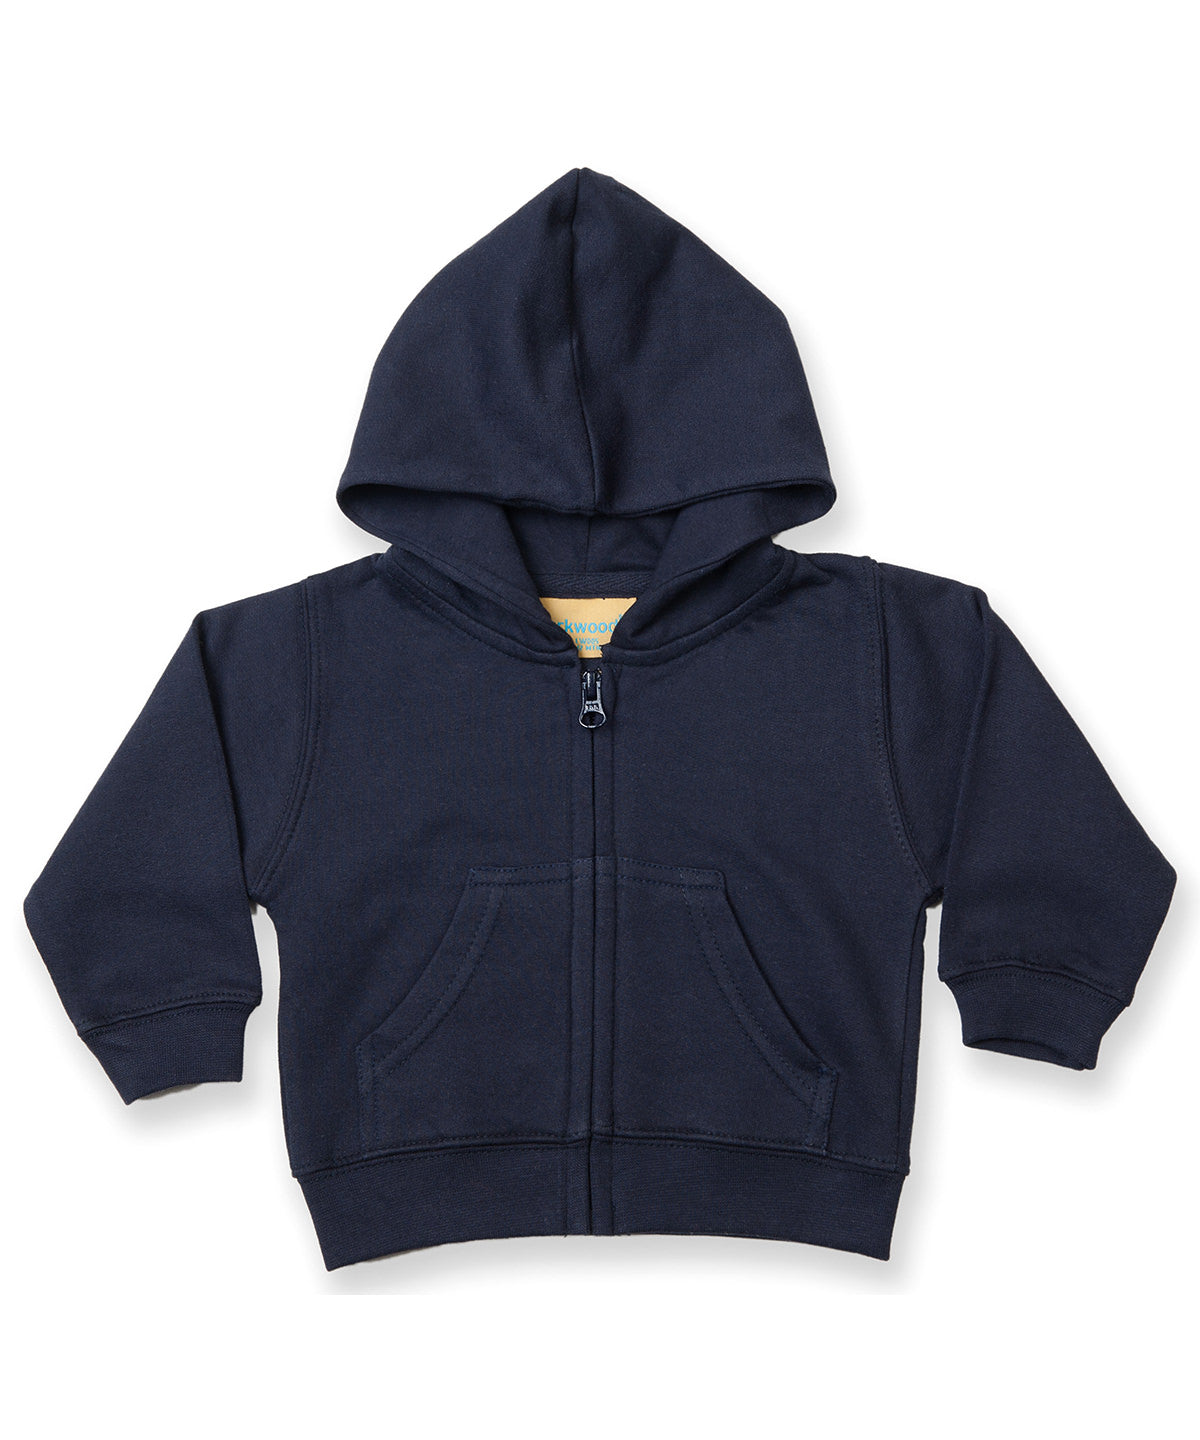 Personalised Hoodies - Navy Larkwood Zip-through hoodie